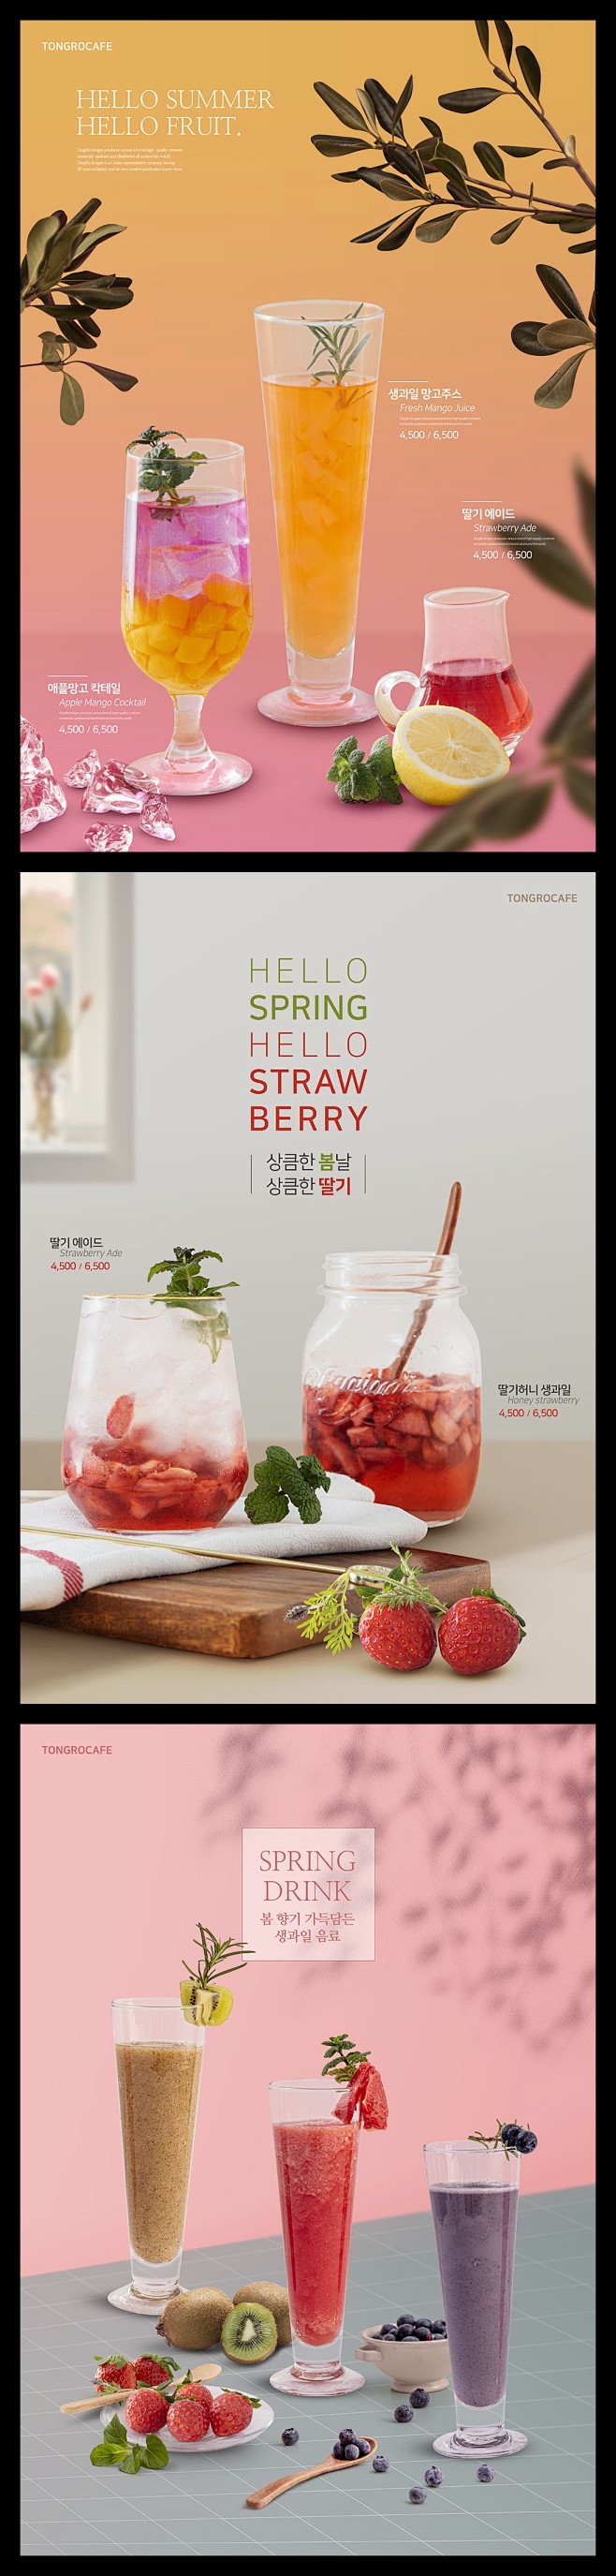 奶茶店水果饮料饮品宣传海报